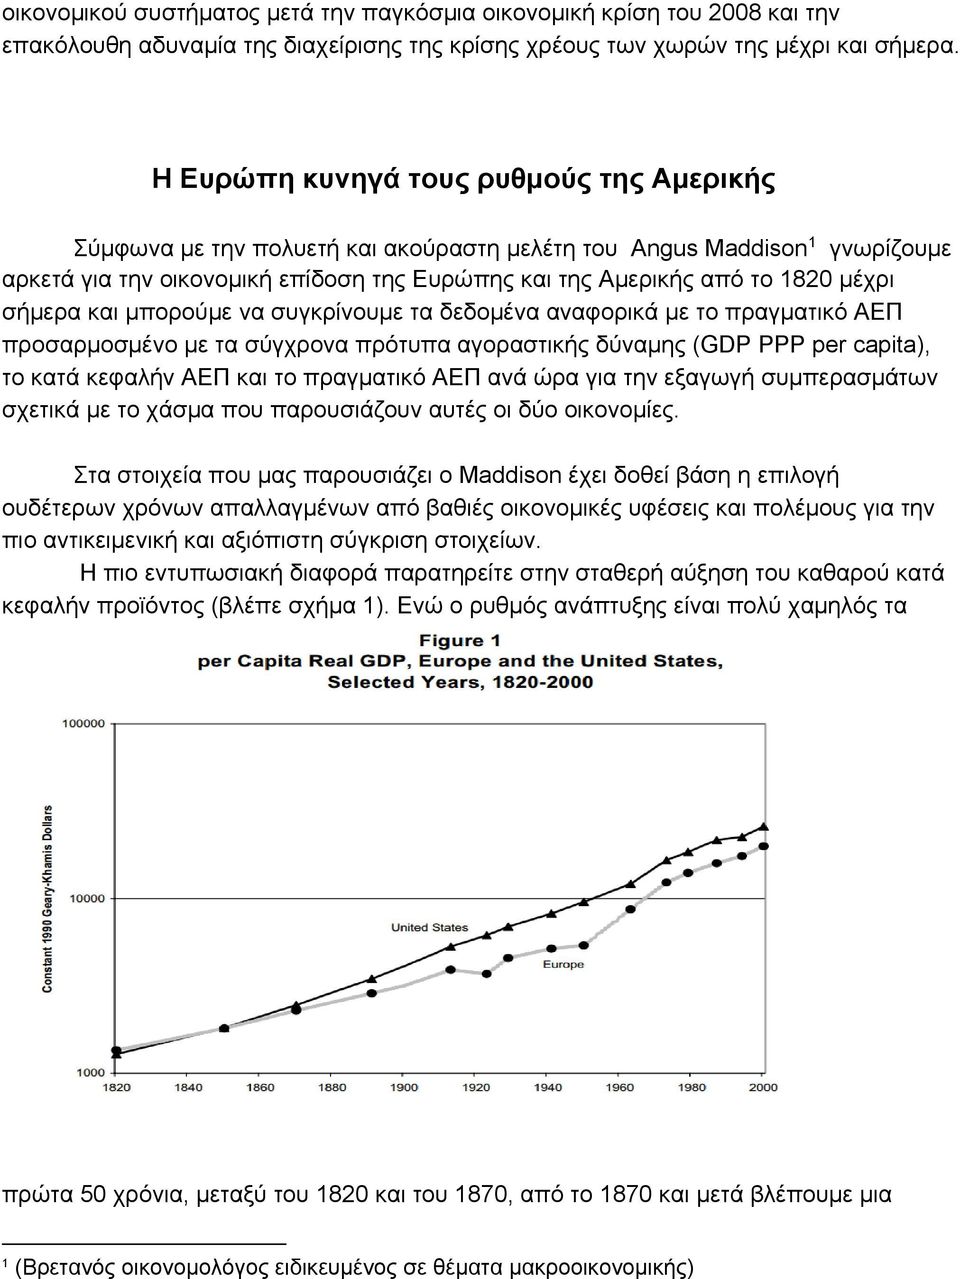 σήμερα και μπορούμε να συγκρίνουμε τα δεδομένα αναφορικά με το πραγματικό ΑΕΠ προσαρμοσμένο με τα σύγχρονα πρότυπα αγοραστικής δύναμης (GDP PPP per capita), το κατά κεφαλήν ΑΕΠ και το πραγματικό ΑΕΠ